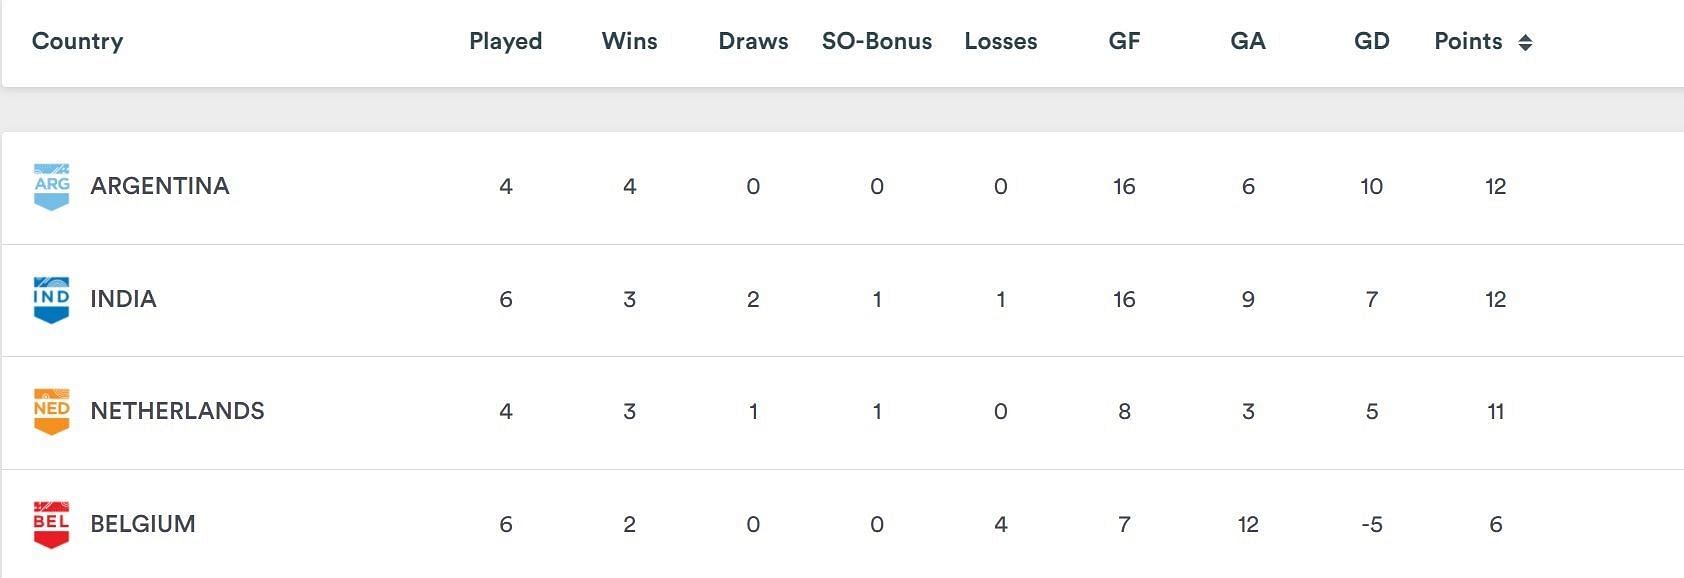 प्रो लीग की मौजूदा अंक तालिका में भारत दूसरे स्थान पर है।